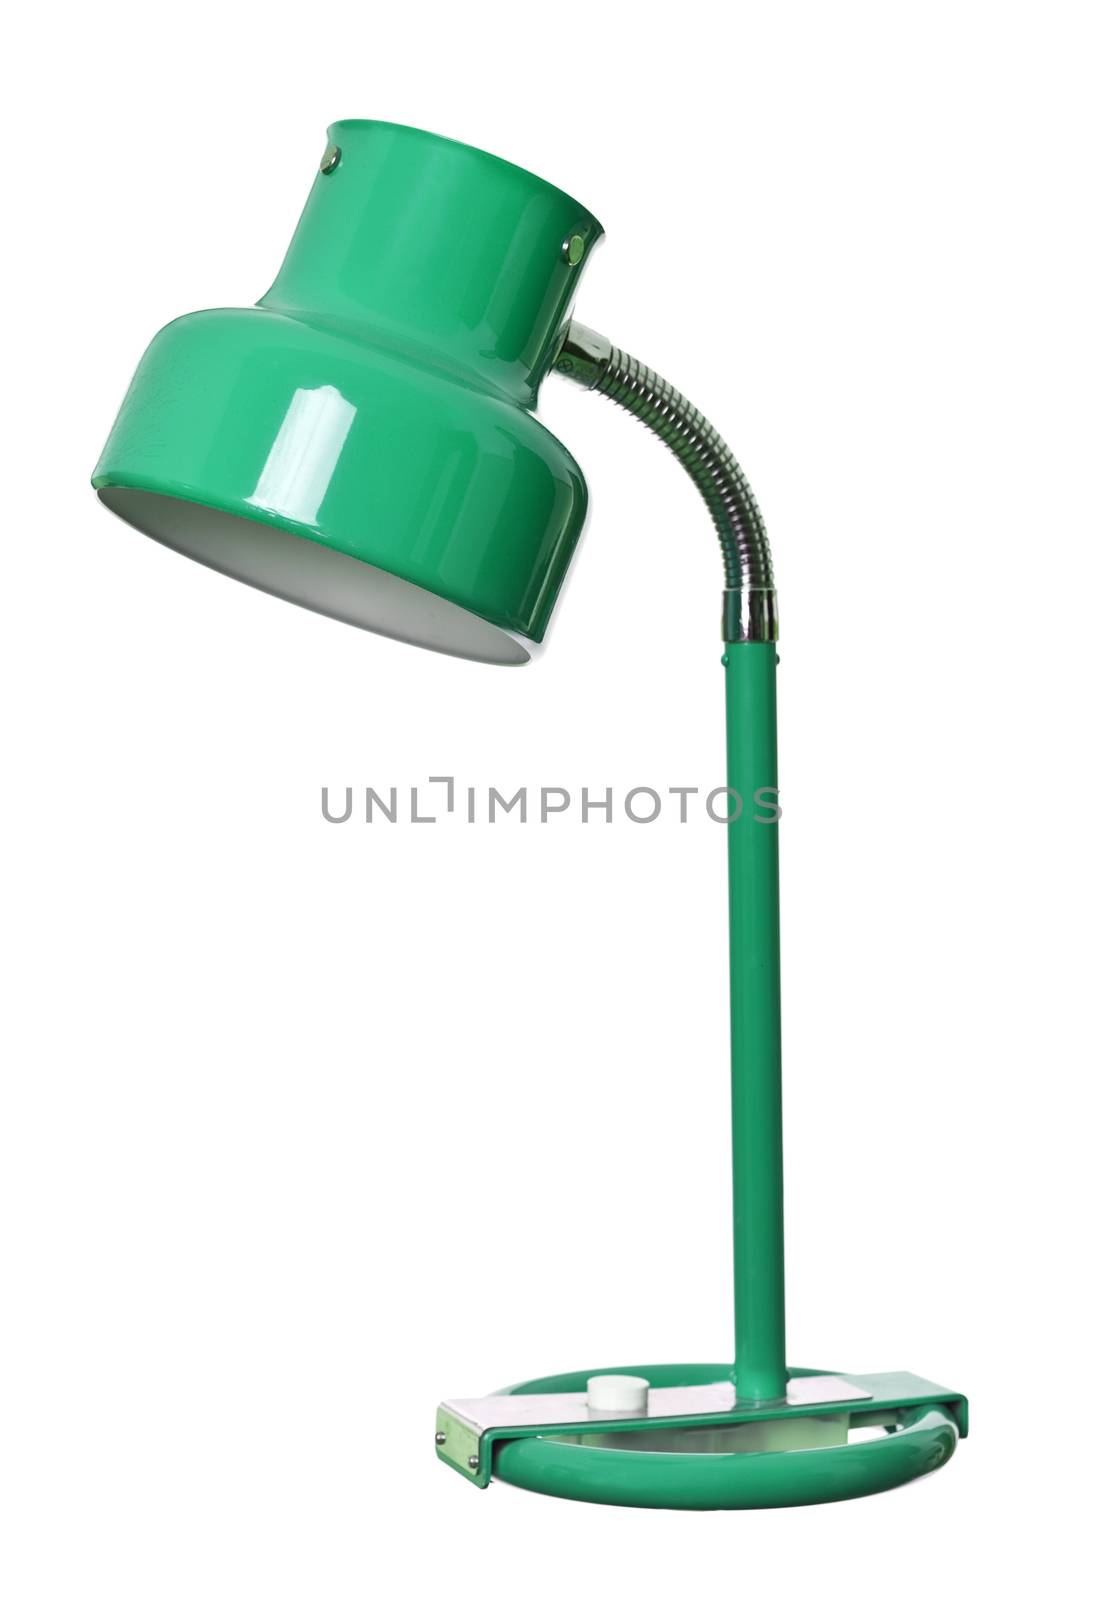 Old green lamp by gemenacom